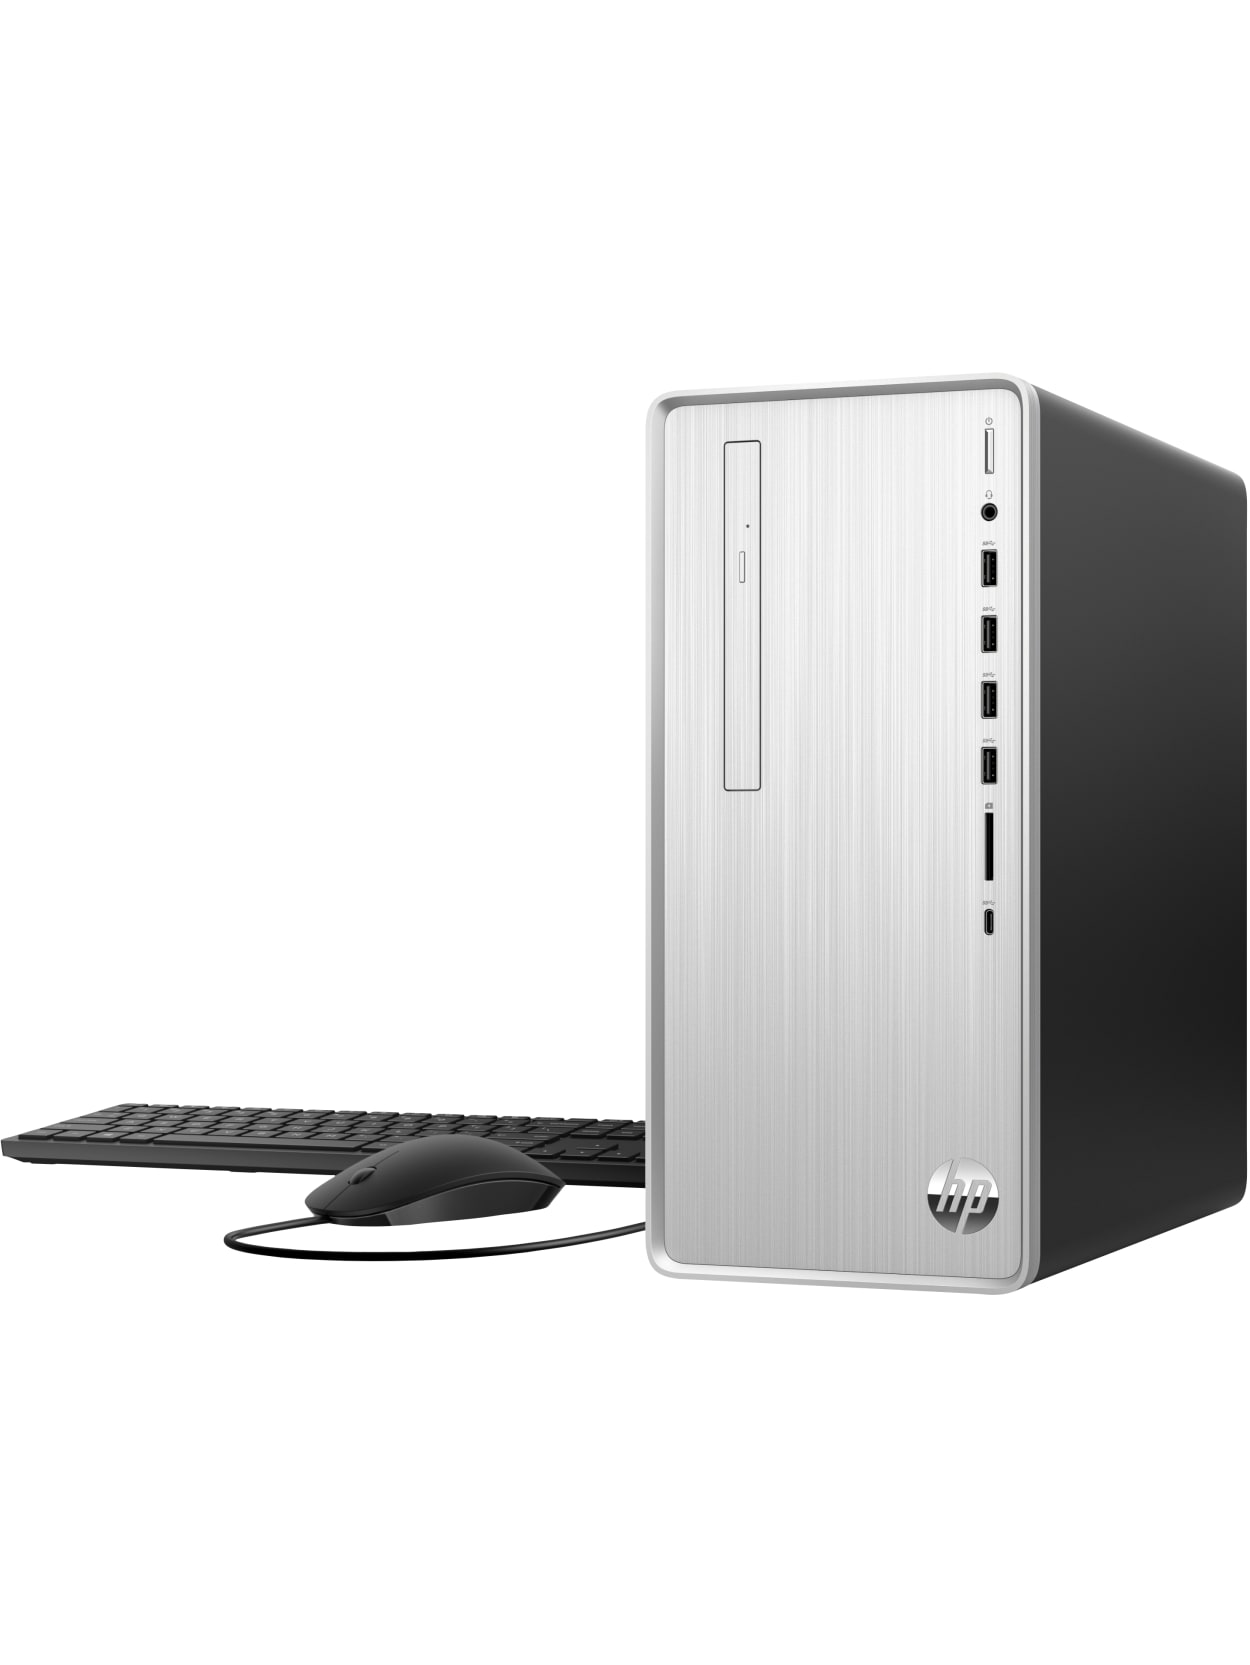 HP Pavilion TP01-2066 Desktop PC $579.99